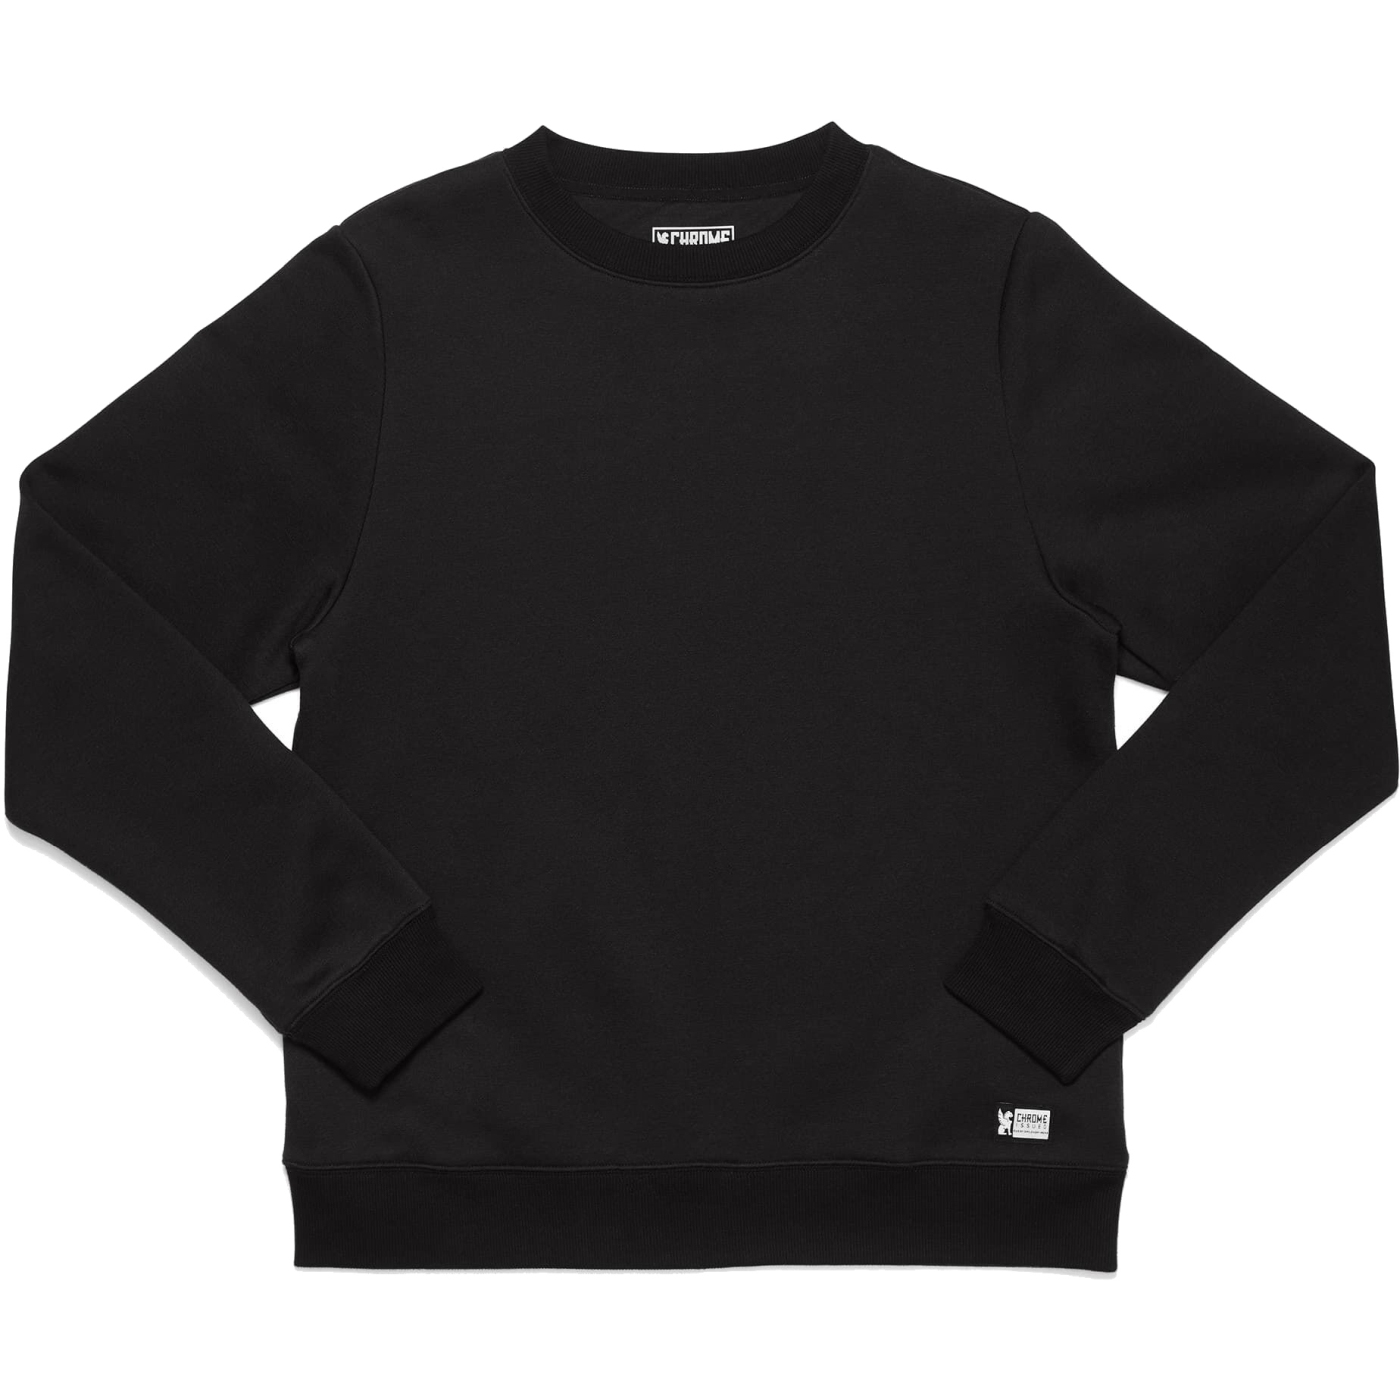 Productfoto van CHROME Issued Fleece Crew Sweatshirt - Zwart